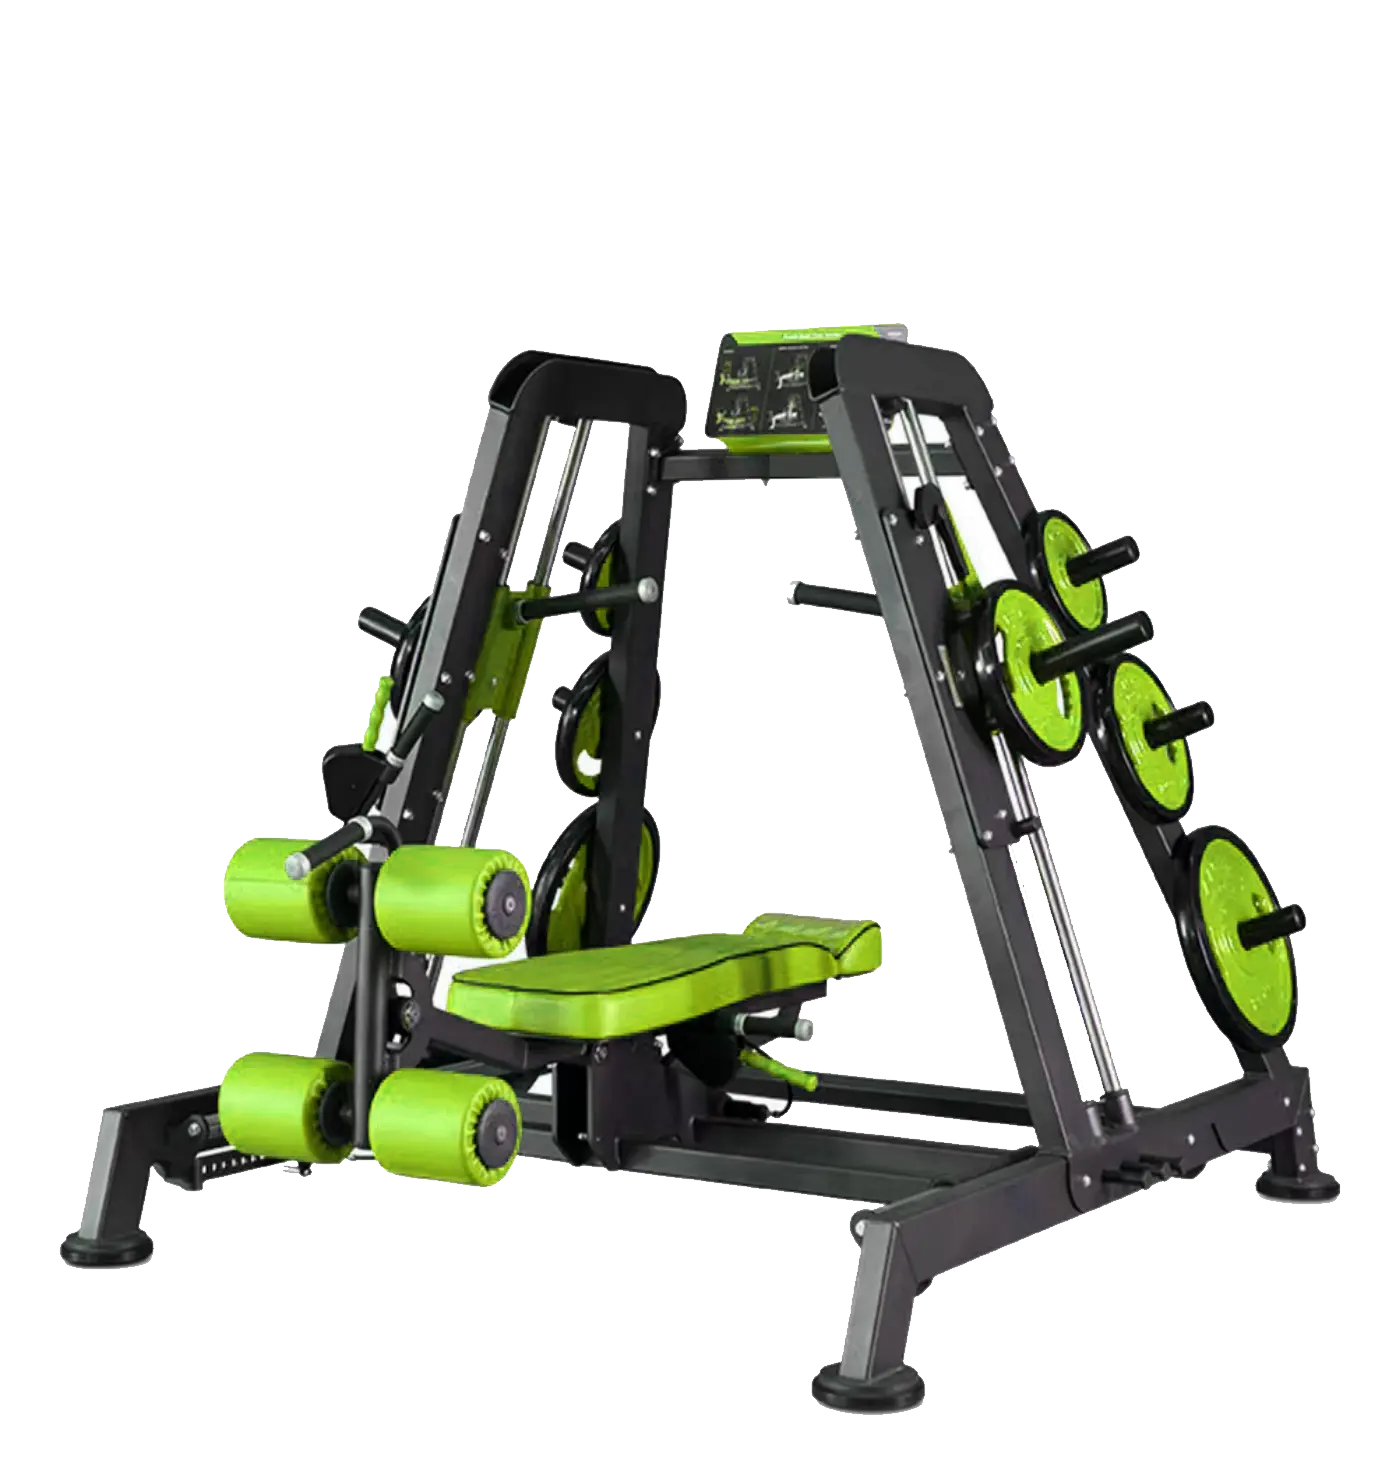 La mejor calidad Shandong Minolta Fitness culturismo placa cargada máquina Fitness gimnasio equipo Multi Torre pecho prensa entrenador